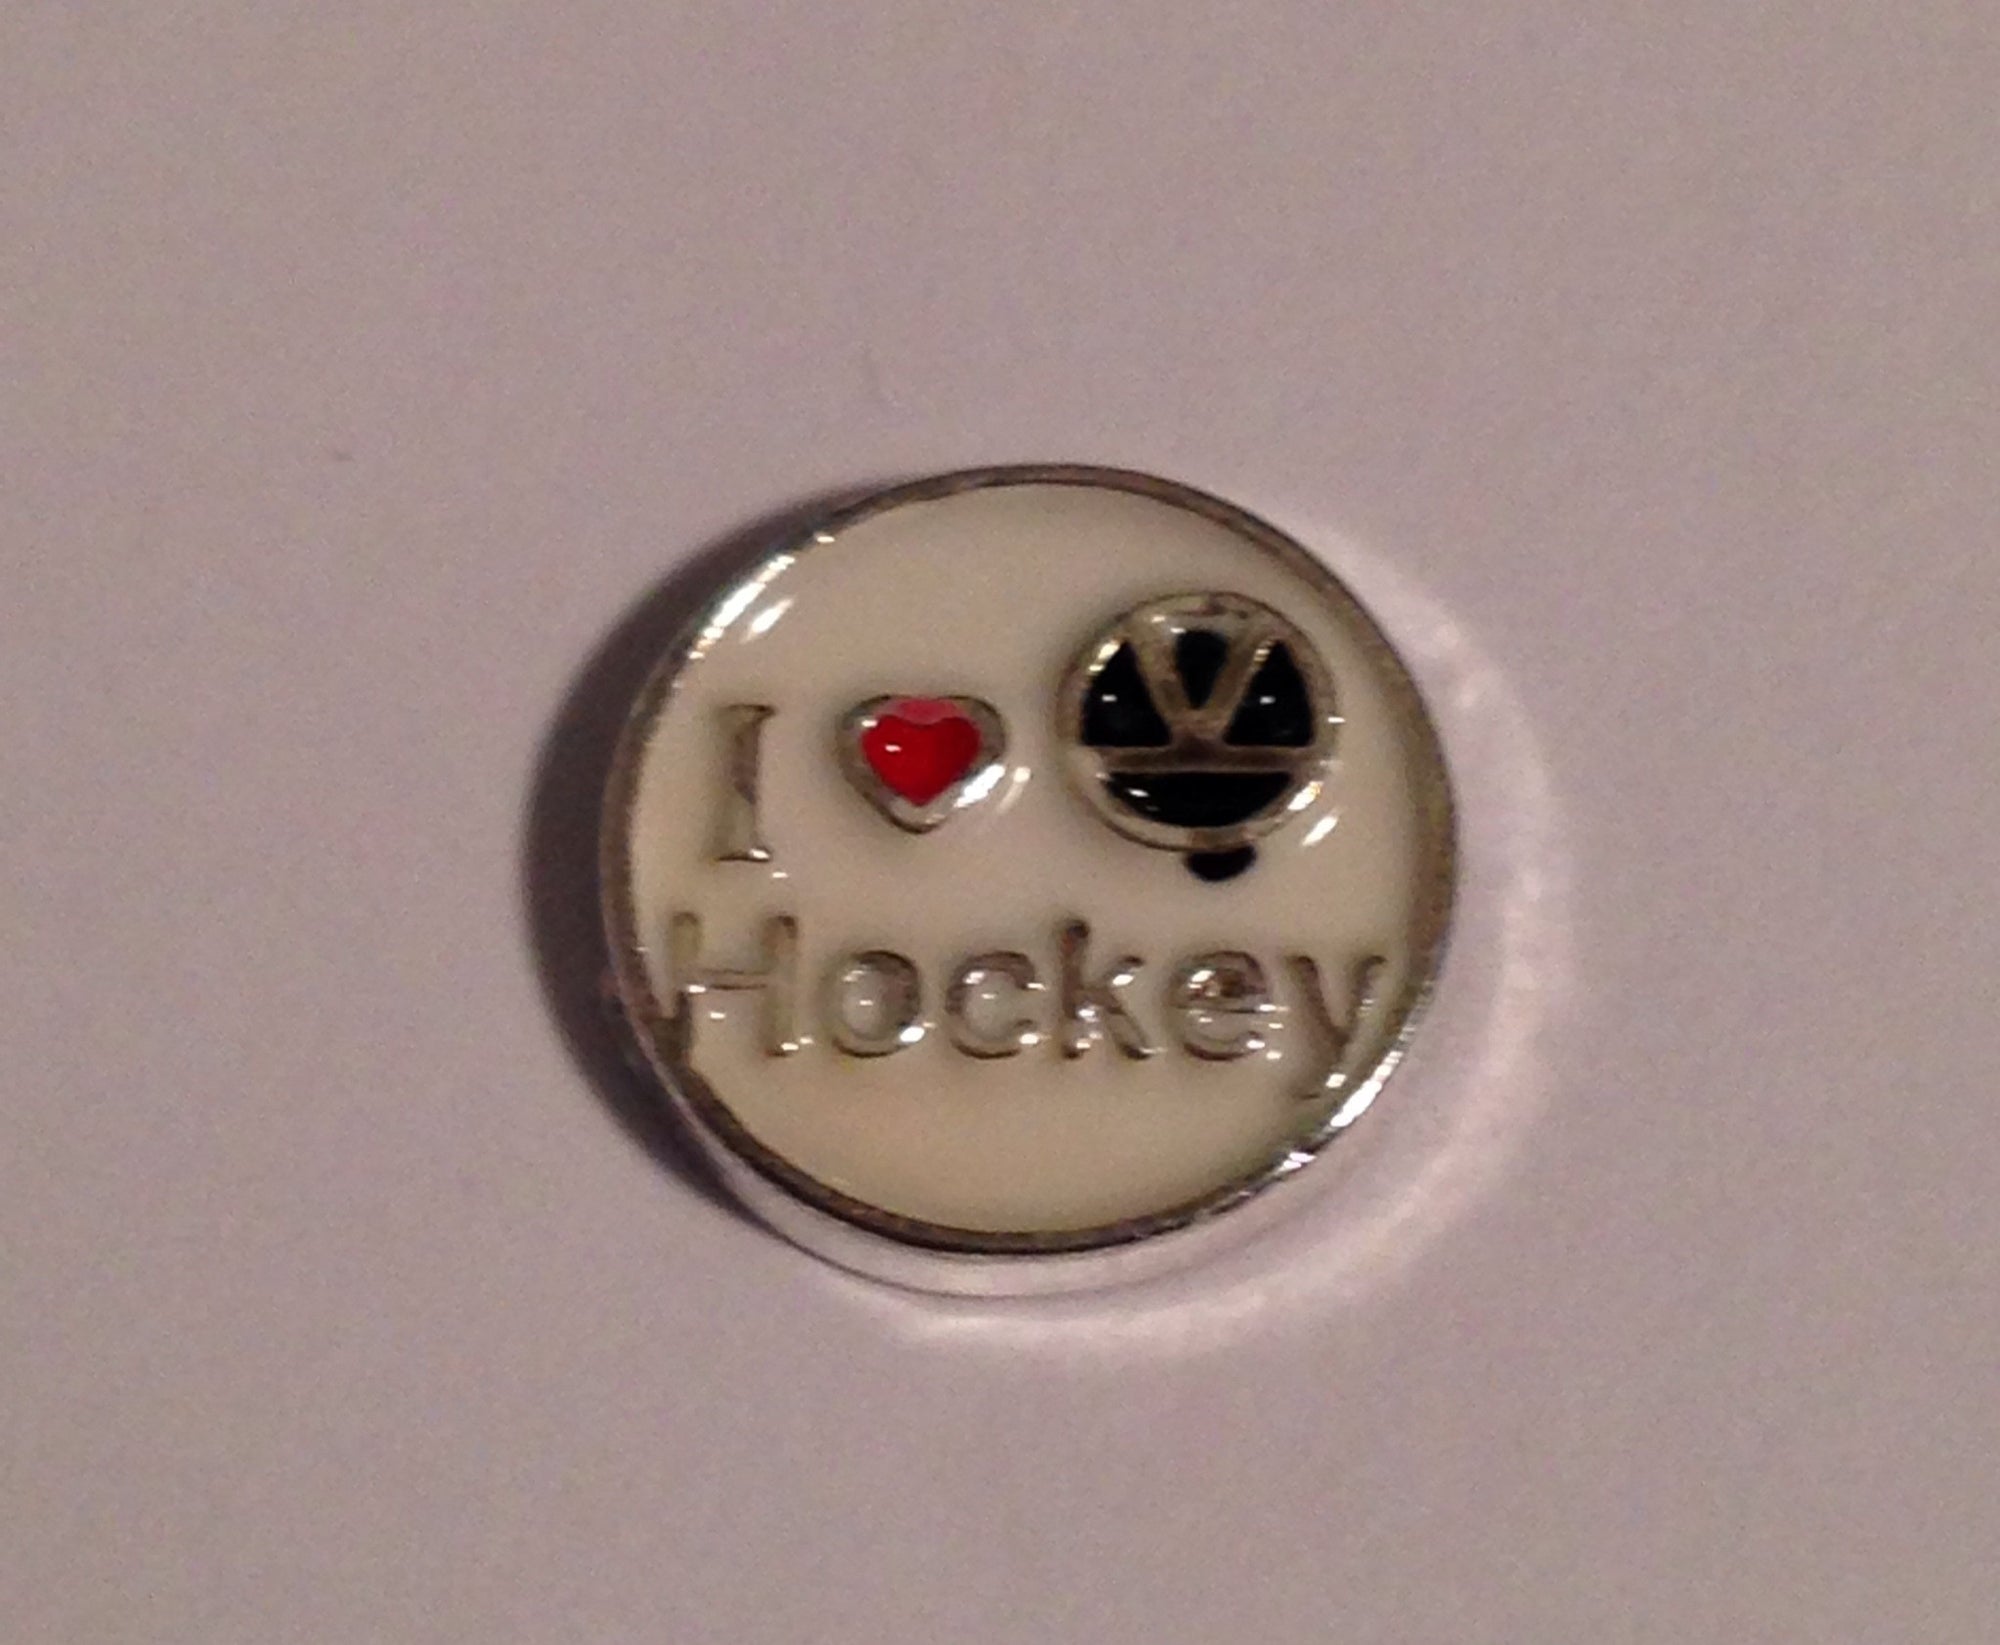 I love hockey - Stoney Creek Charms